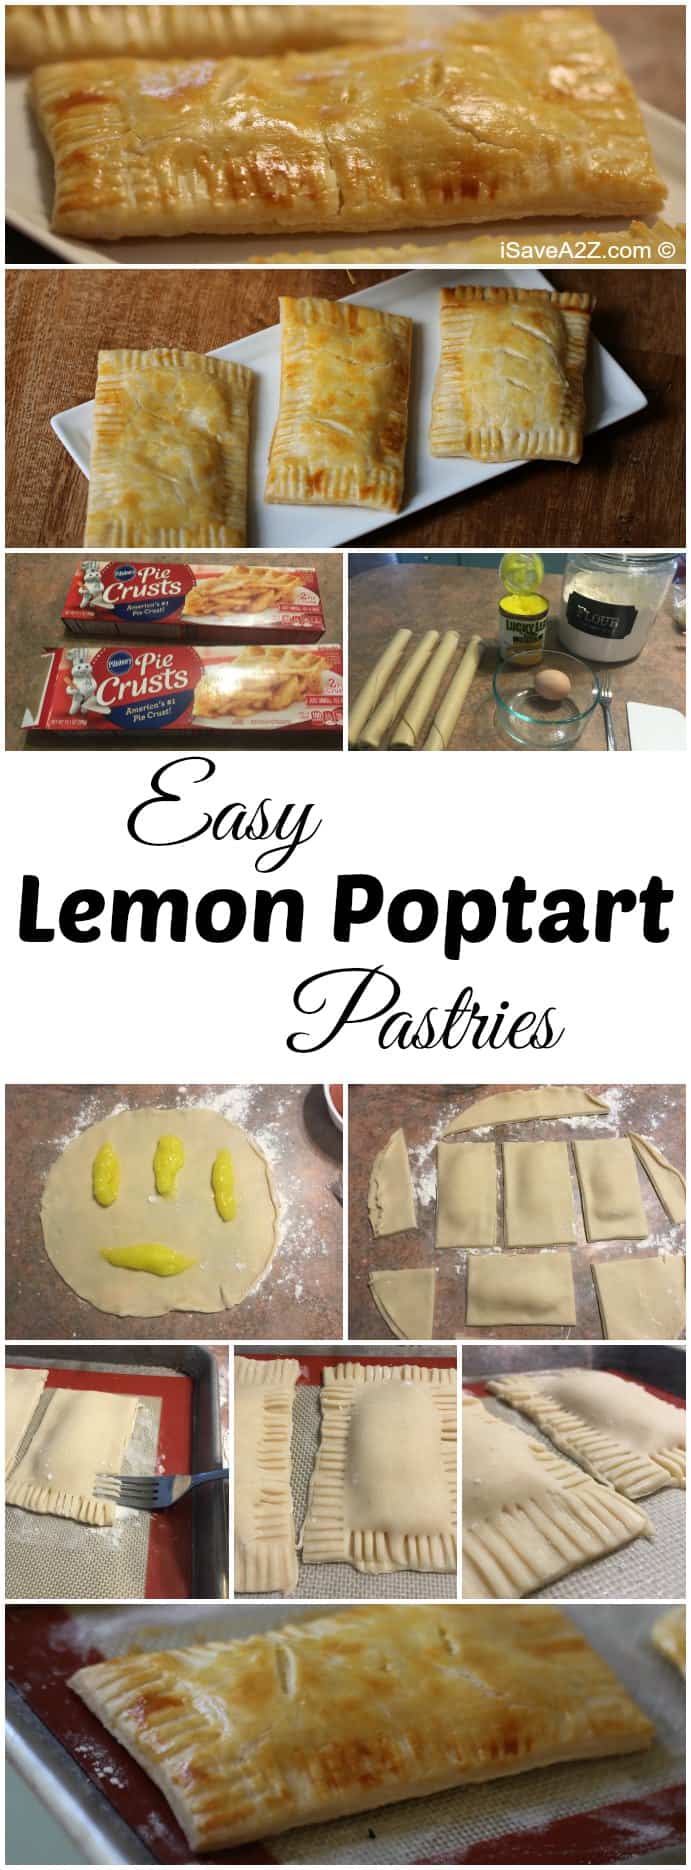 Easy Lemon Poptart Pastries